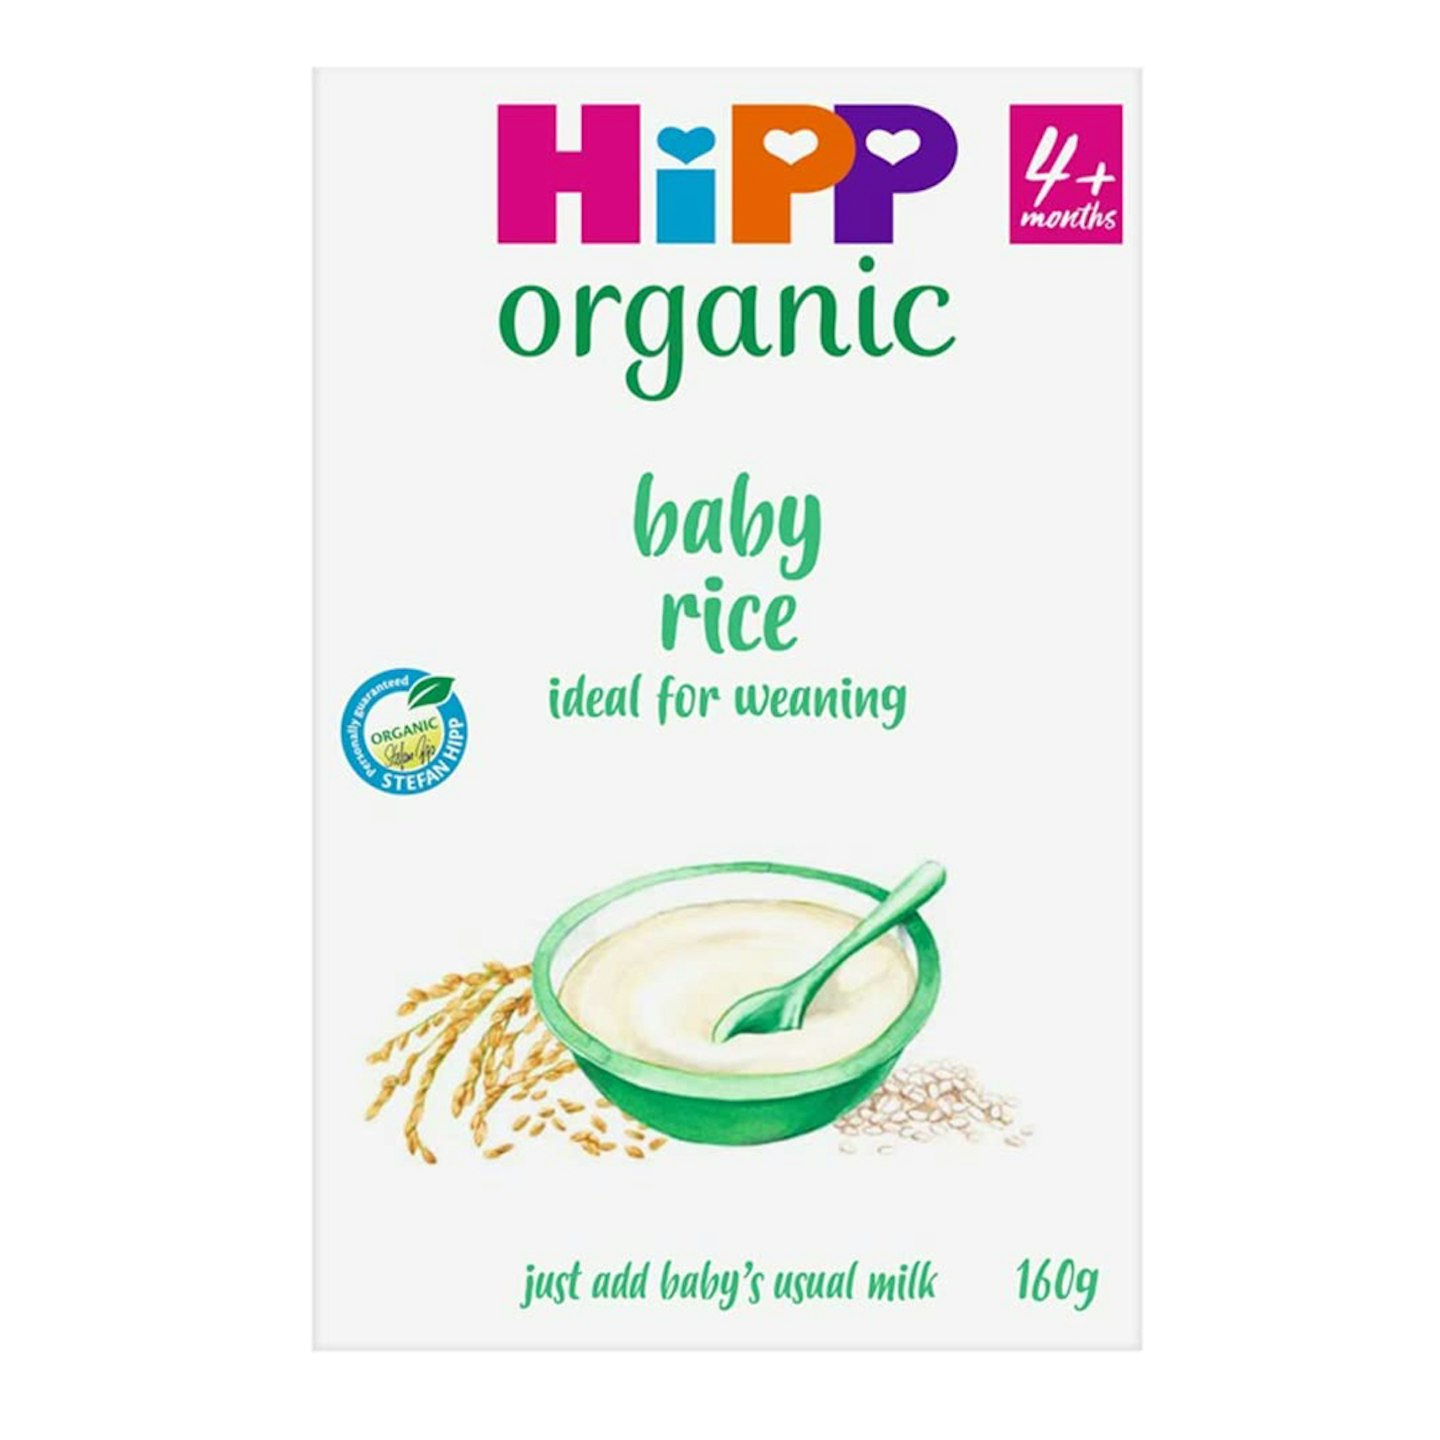 HiPP organic